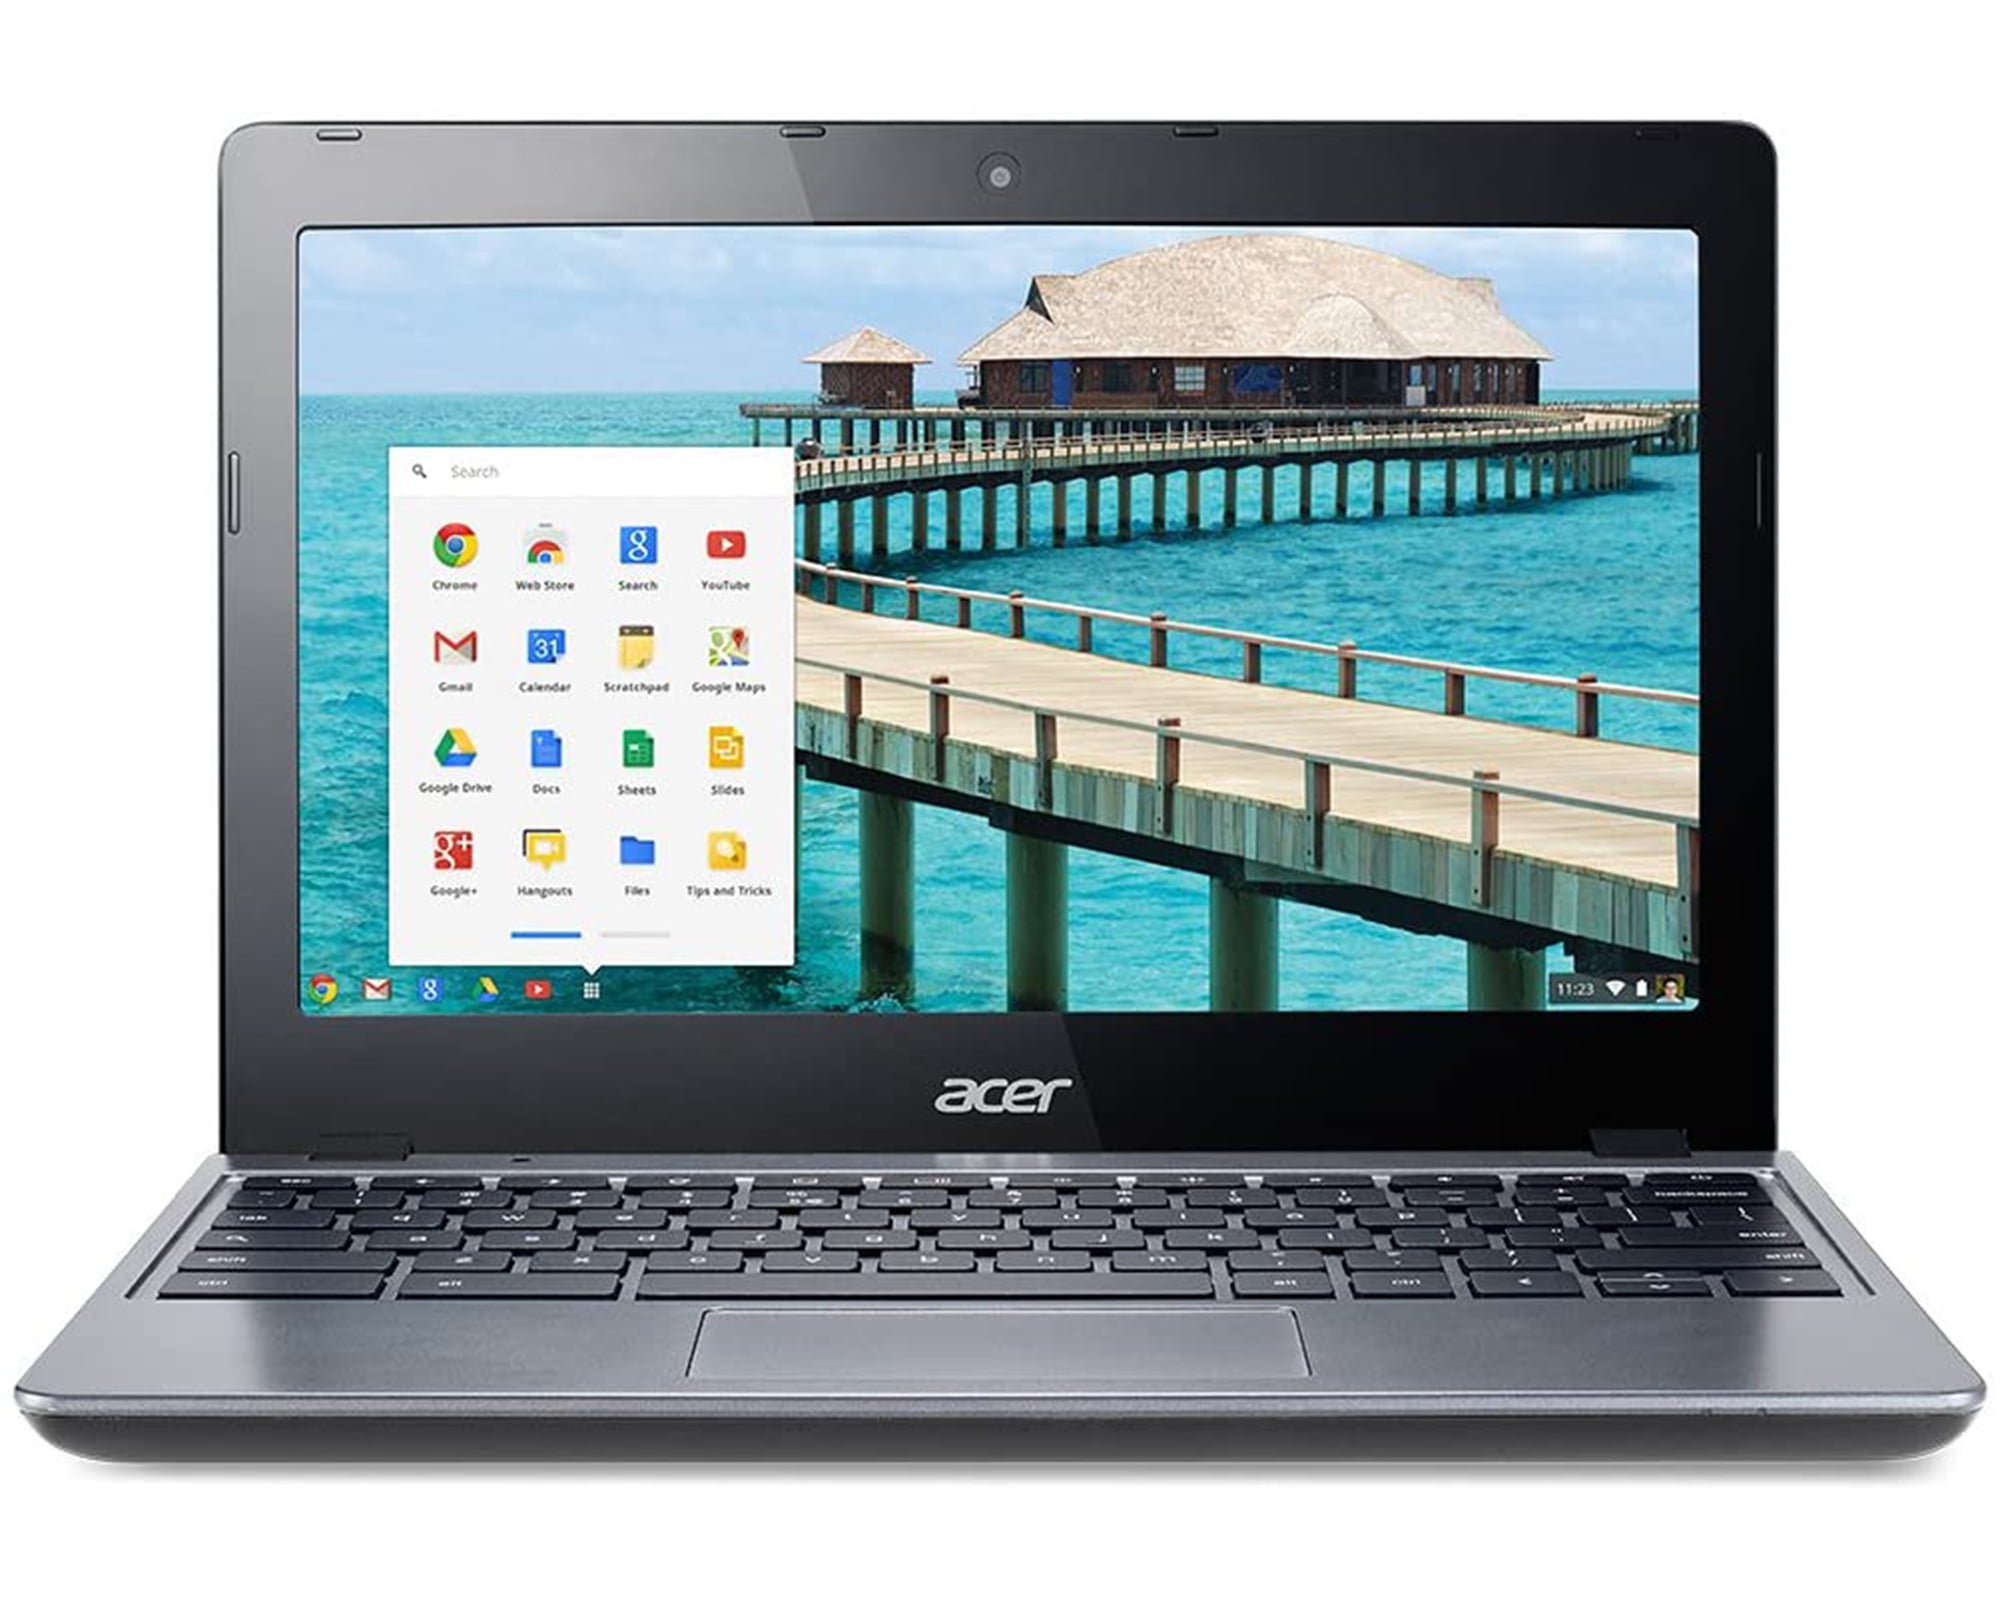 Acer Chromebook C720 là sản phẩm đáng chú ý với thiết kế mỏng nhẹ, năng suất cao và tính di động tuyệt vời. Hãy xem hình ảnh liên quan để khám phá tất cả những tính năng hấp dẫn của sản phẩm này và quyết định có nên sở hữu nó hay không.